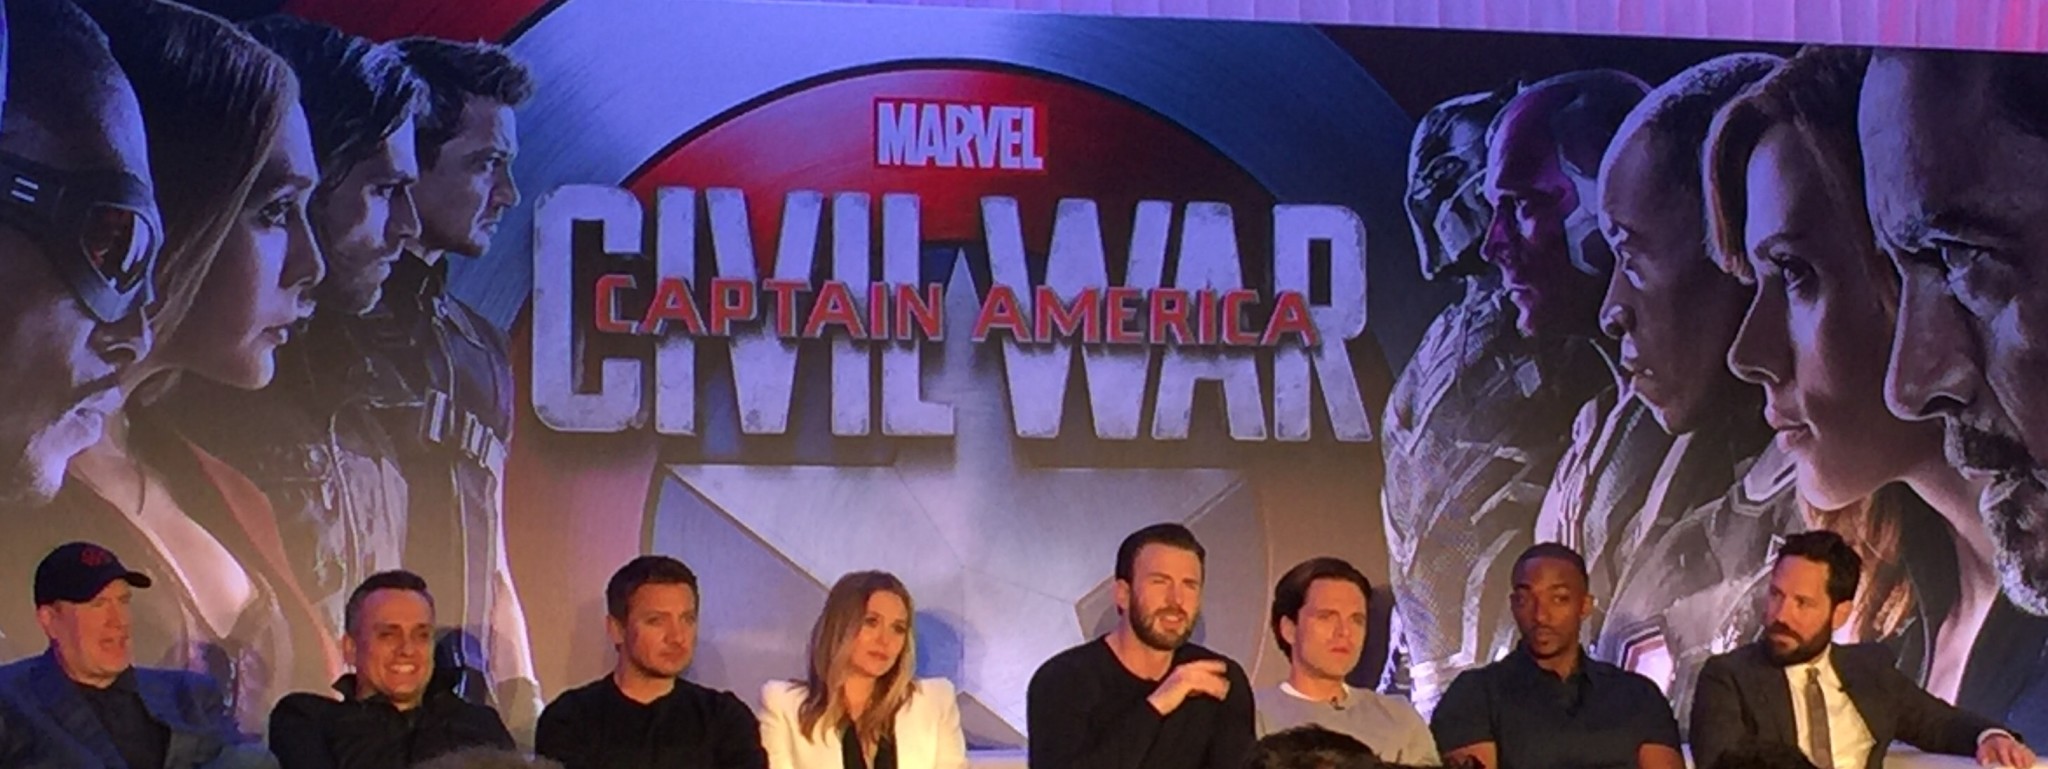 Captain America: Civil War Press Conference- Team Captain America